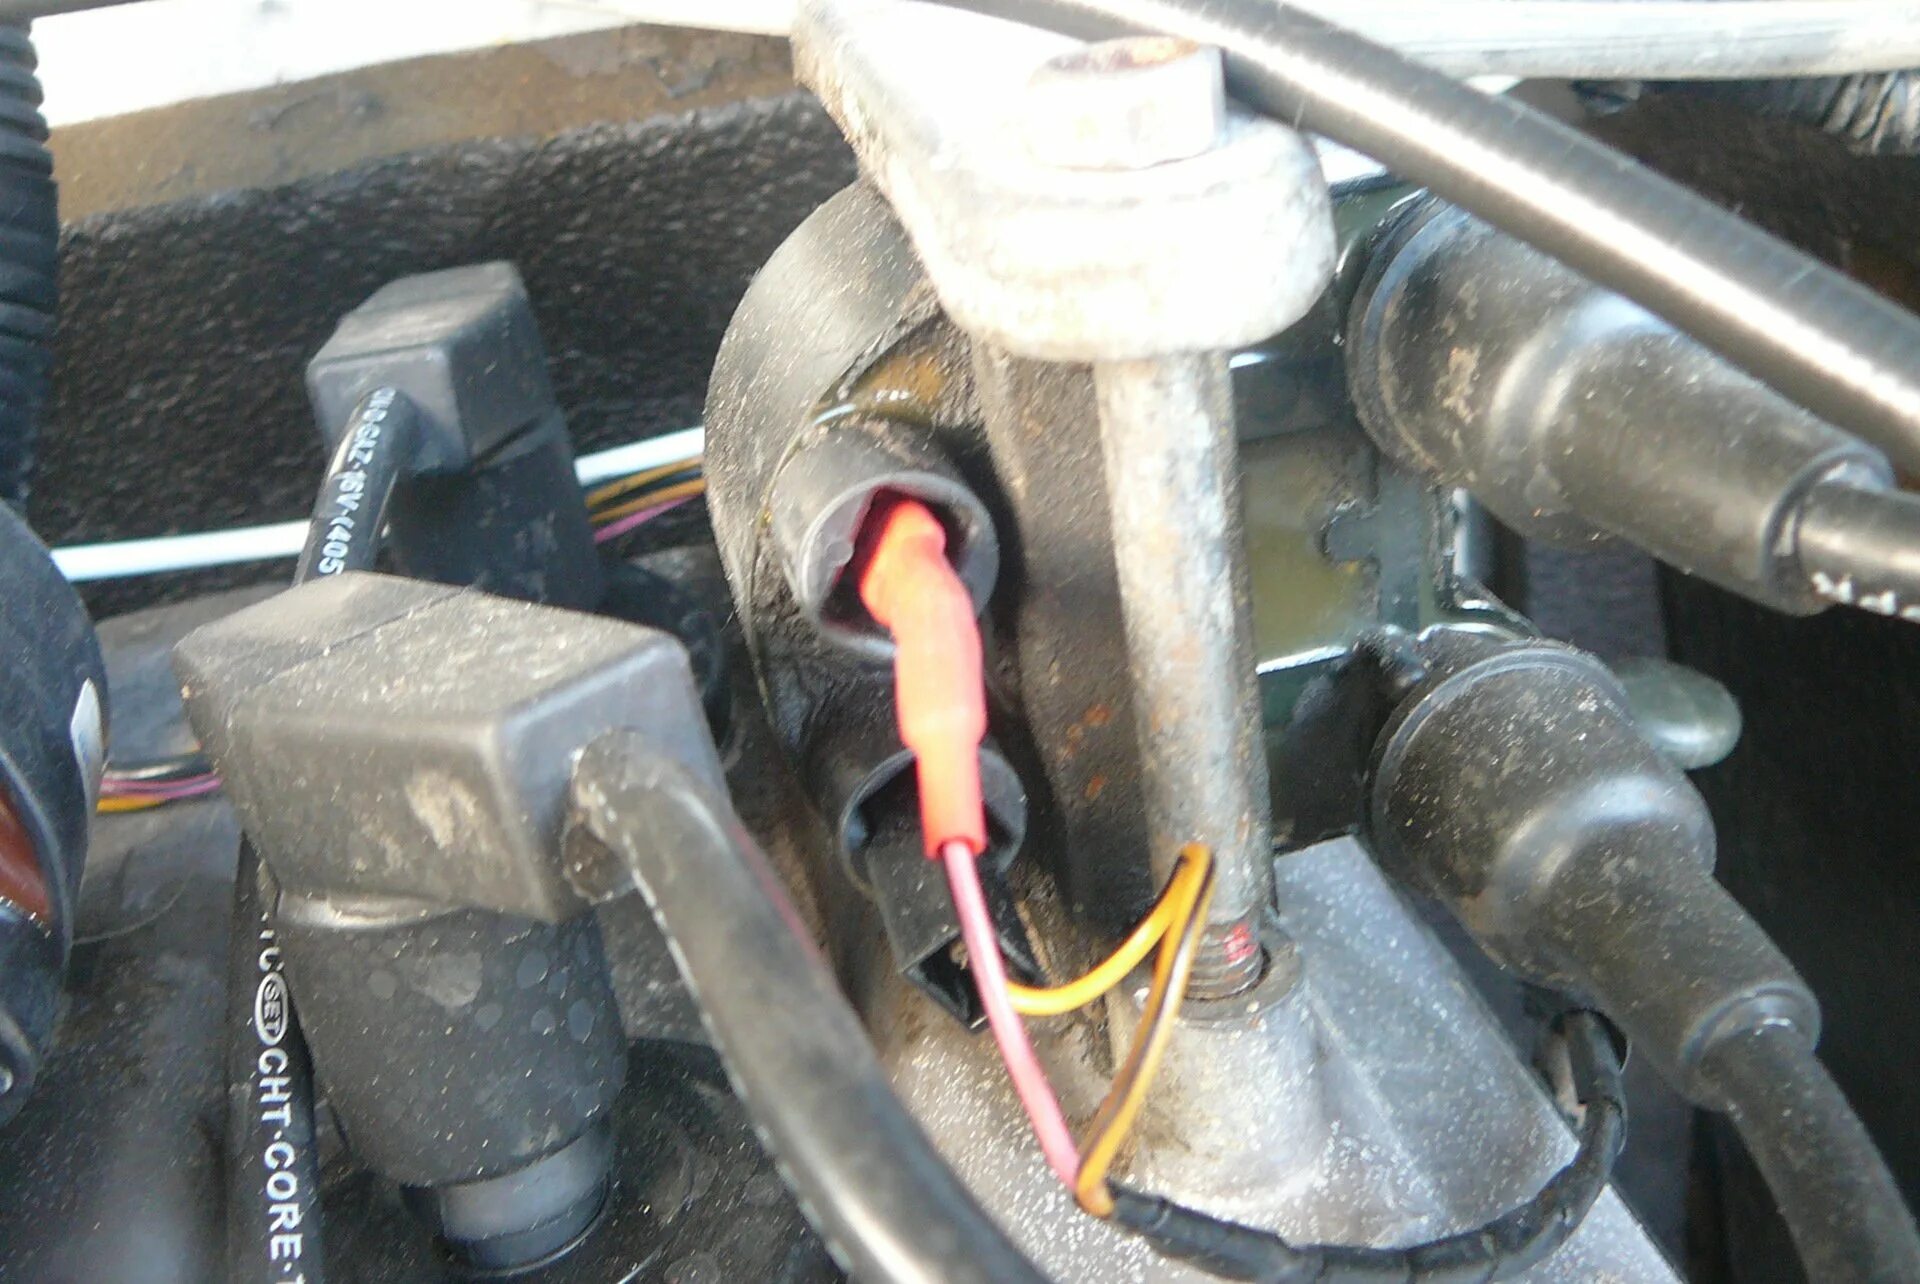 Фишка тормозной лягушки 2109 карбюратор. ВАЗ 2109 инжектор Нажимая на ГАЗ глохнет. Педаль газа на ВАЗ 2109 карбюратор провал. ПАЗ инжектор глохнет.